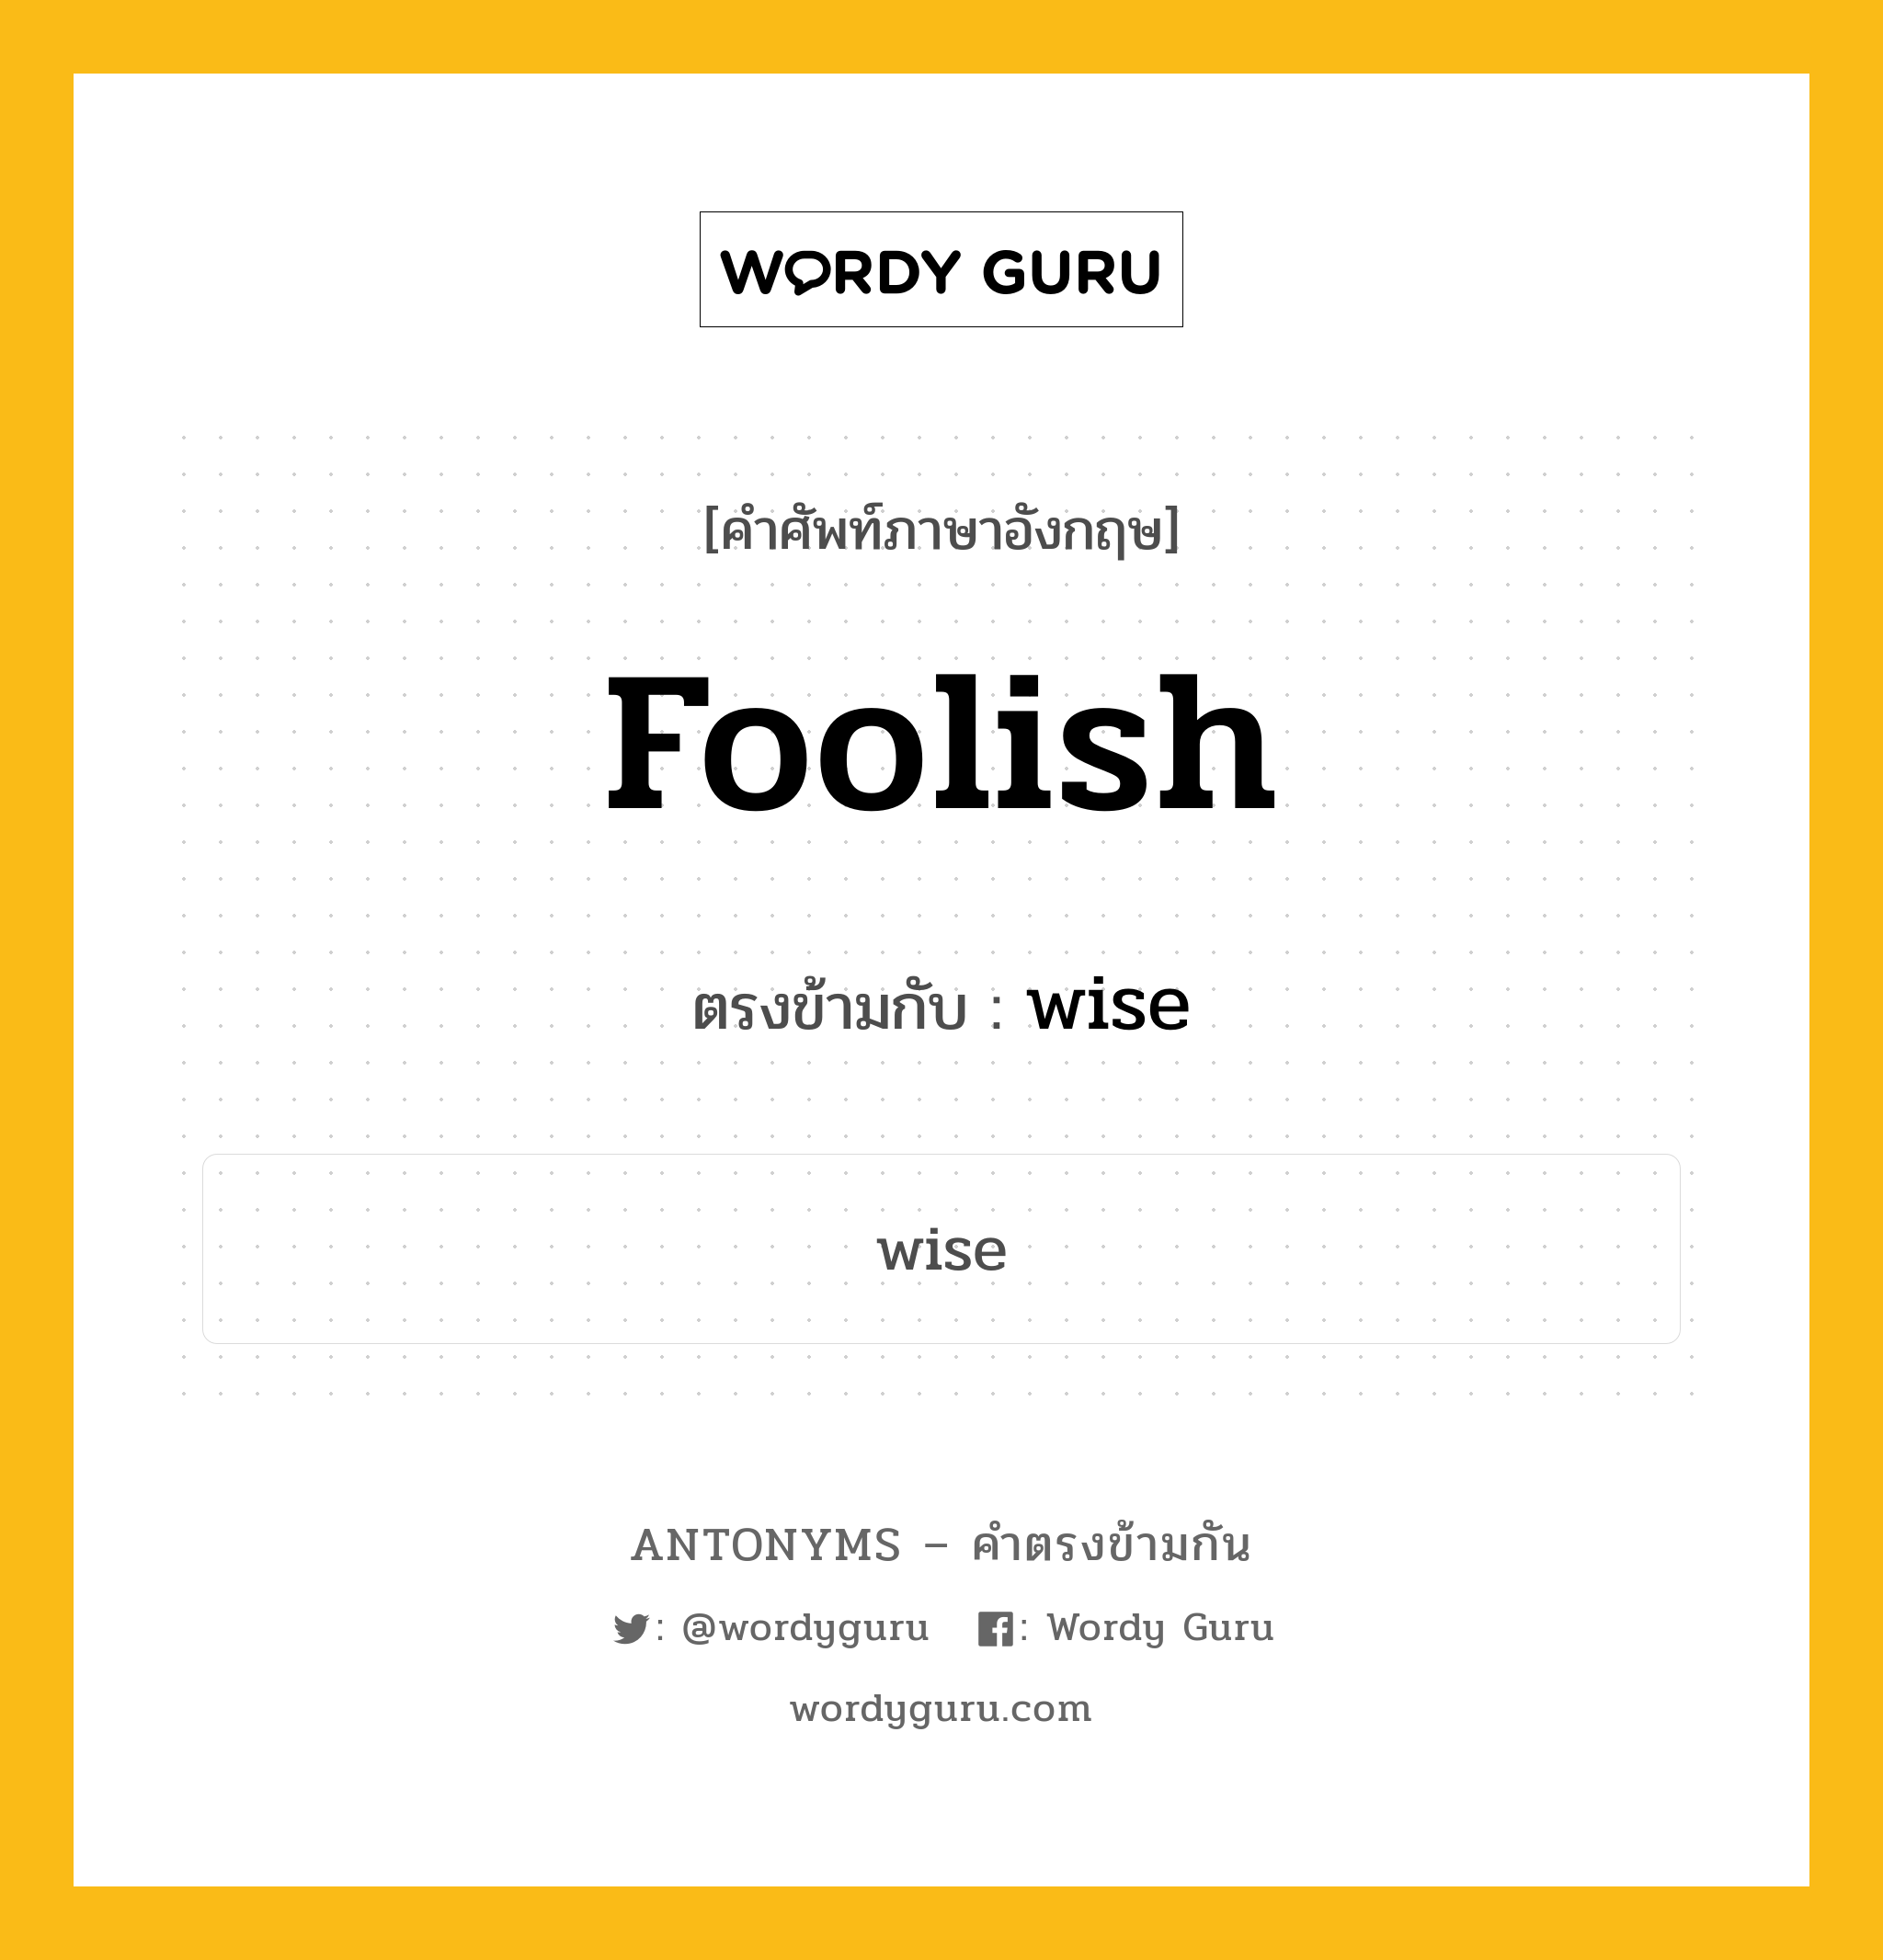 foolish เป็นคำตรงข้ามกับคำไหนบ้าง?, คำศัพท์ภาษาอังกฤษ foolish ตรงข้ามกับ wise หมวด wise